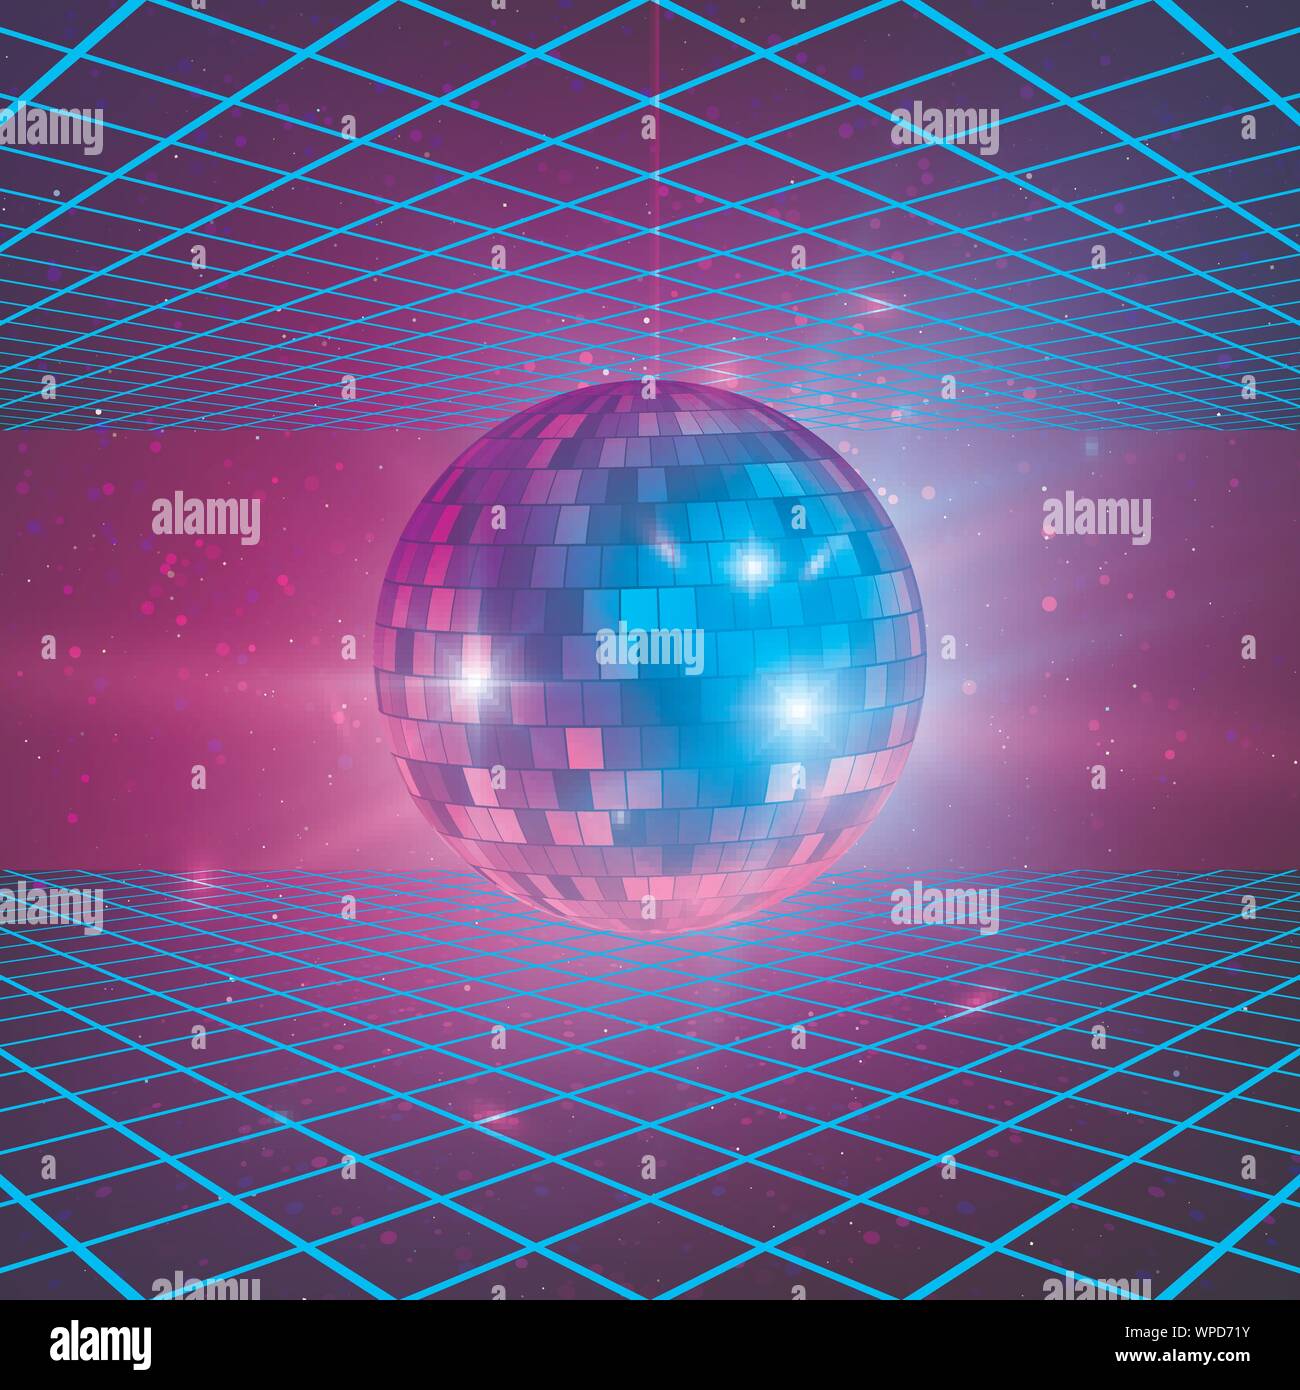 Retro Hintergrund mit Laser Strahlen und Mirror Ball. Disco Party 80 s Poster Vorlage. Vector Illustration Stock Vektor